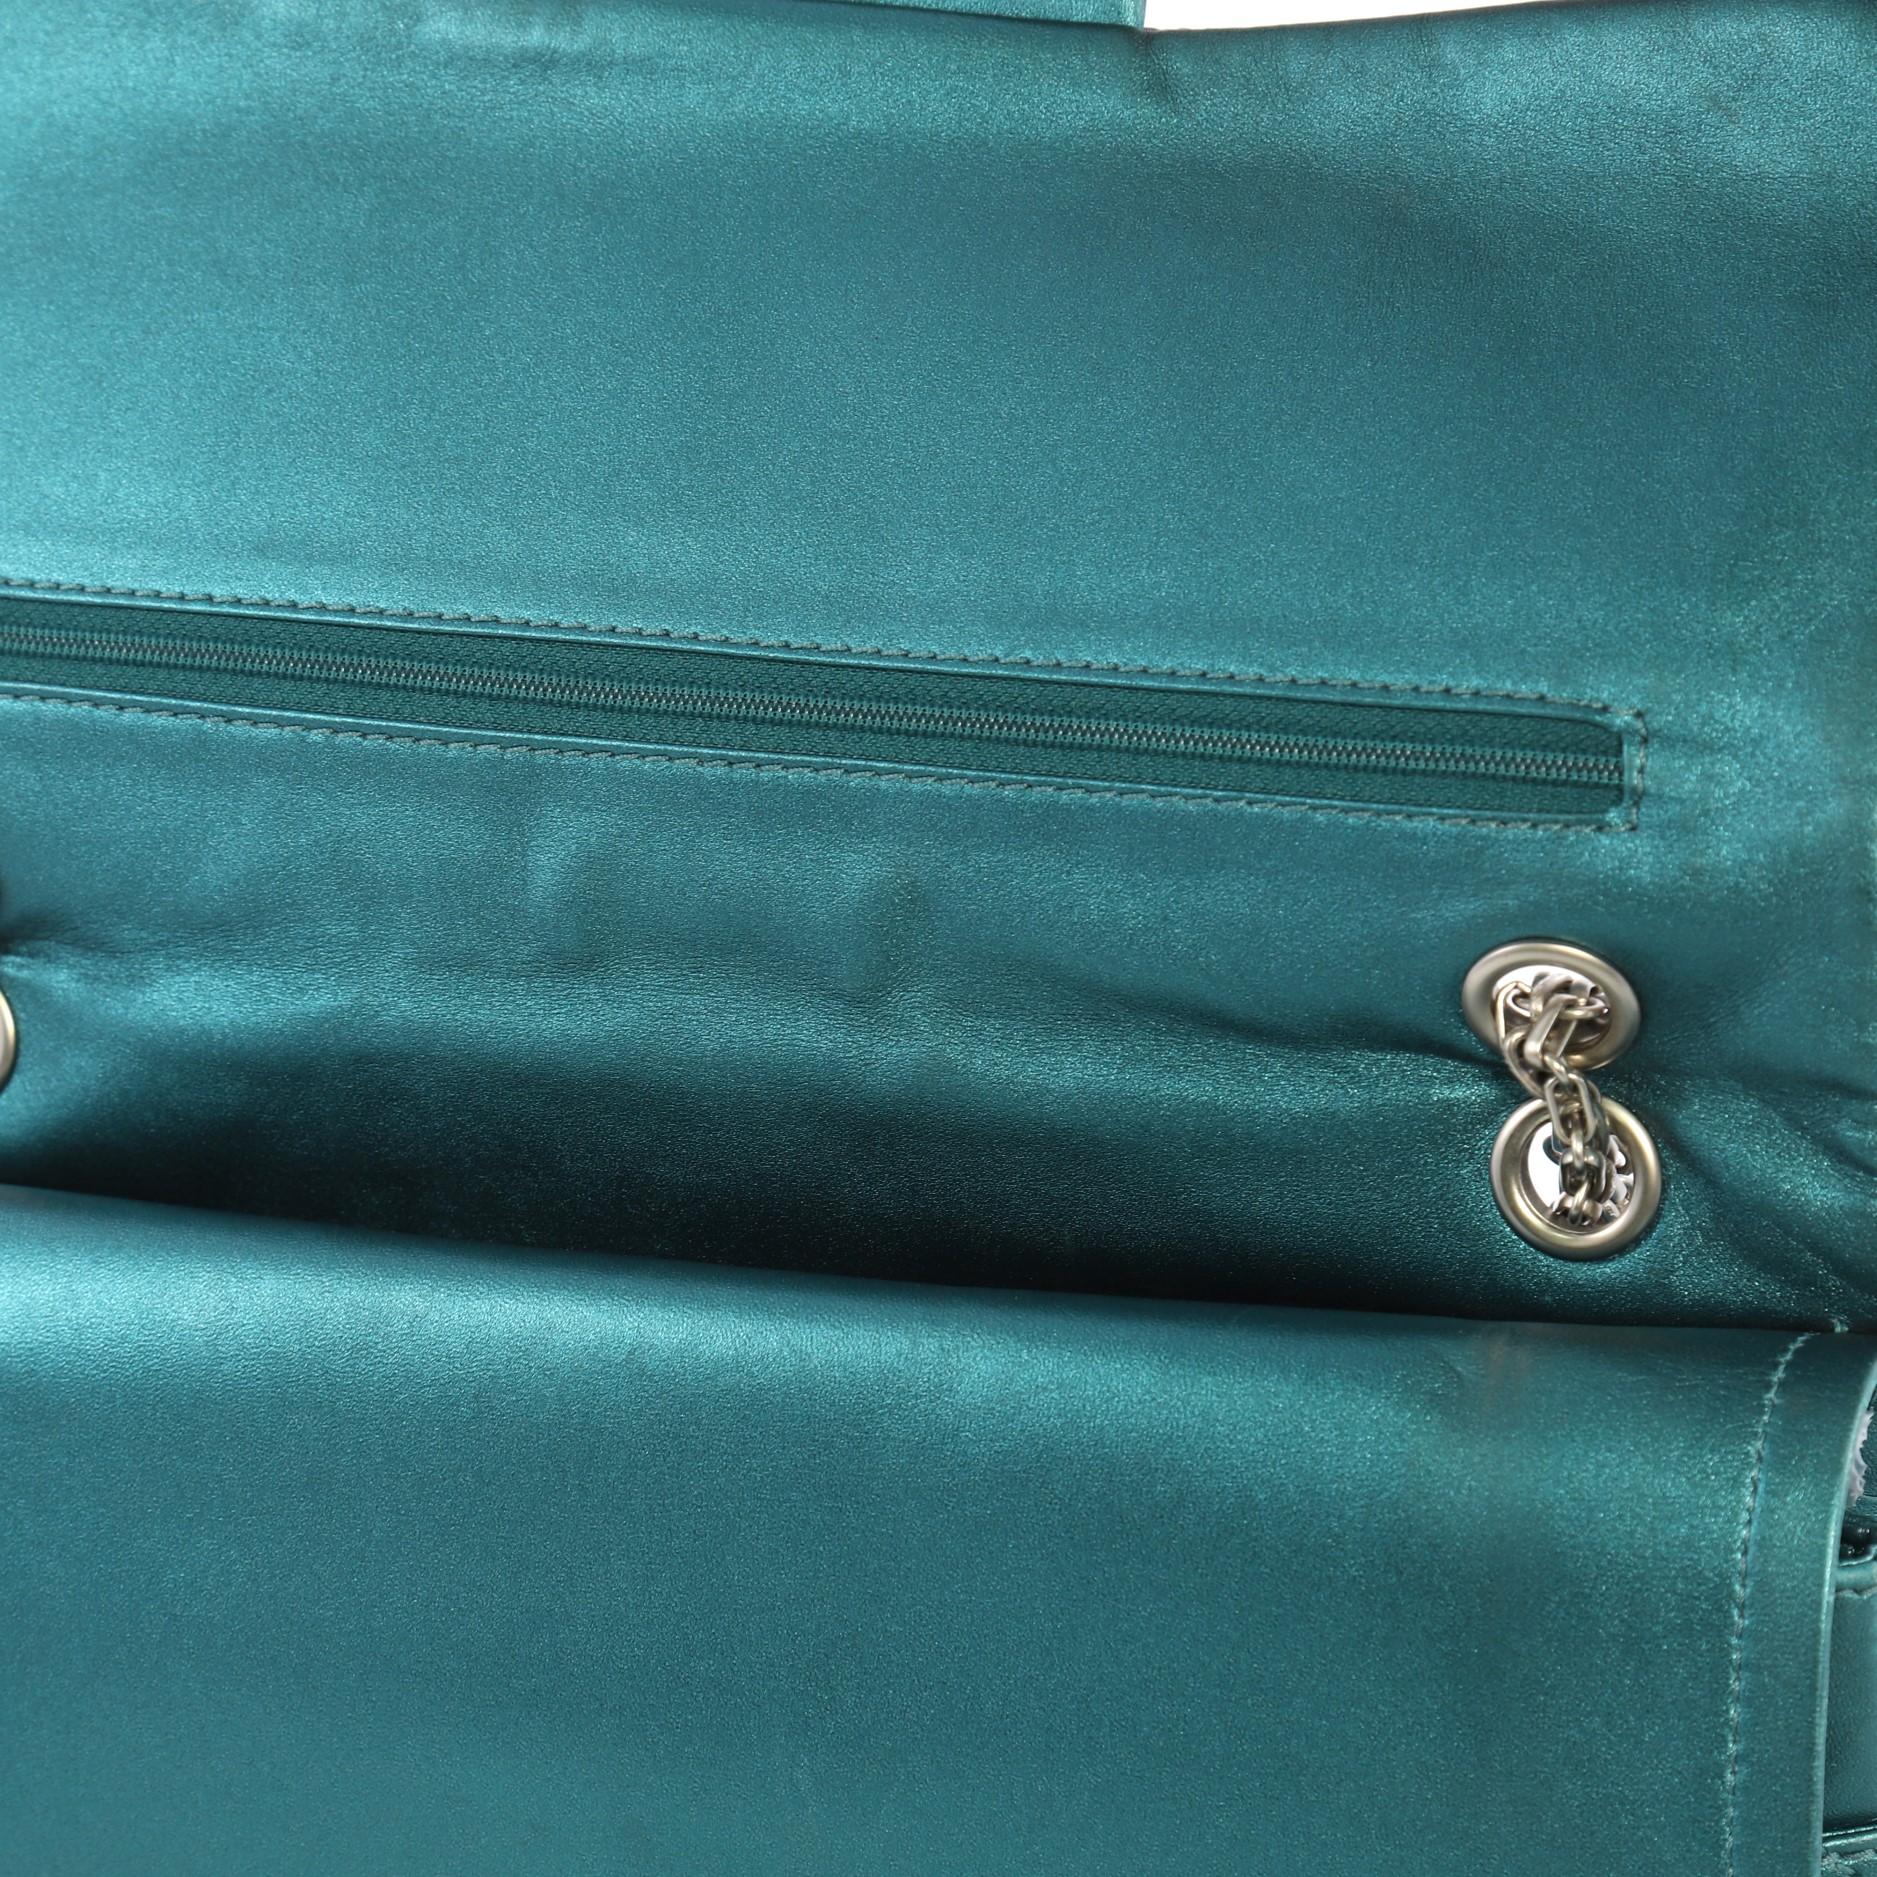 Chanel Reissue 2.55 Handbag Quilted Metallic Aged Calfskin 227 5